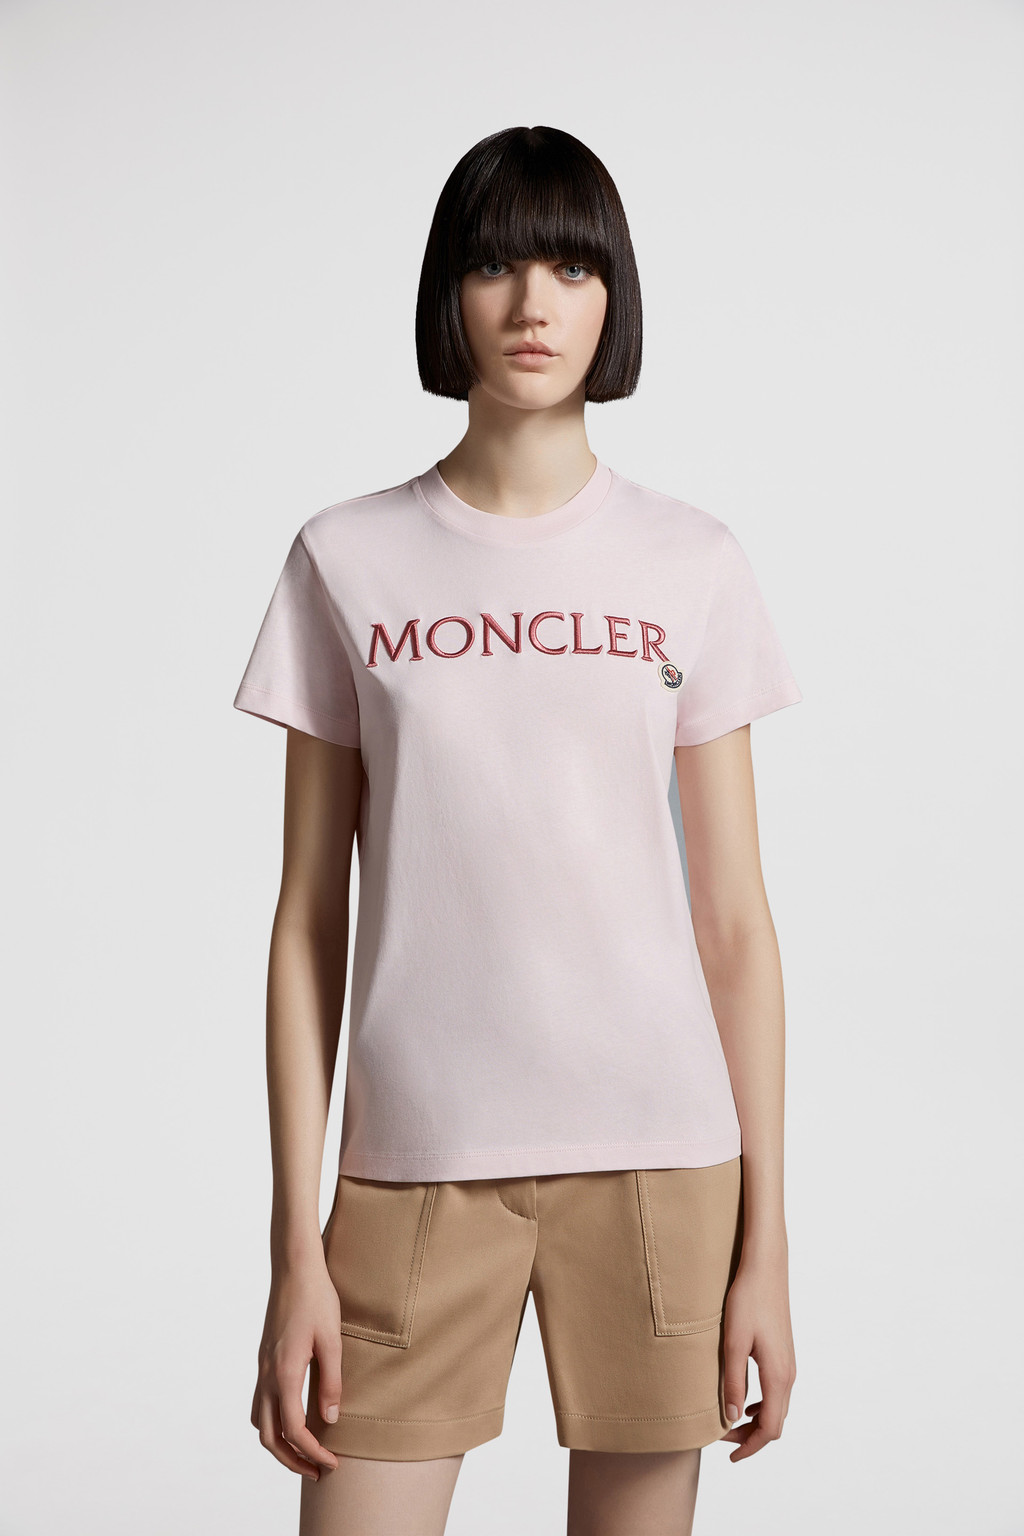 通販超歓迎L11 MONCLER ホワイト ビックロゴ 半袖 Tシャツ size L Tシャツ(半袖/袖なし)